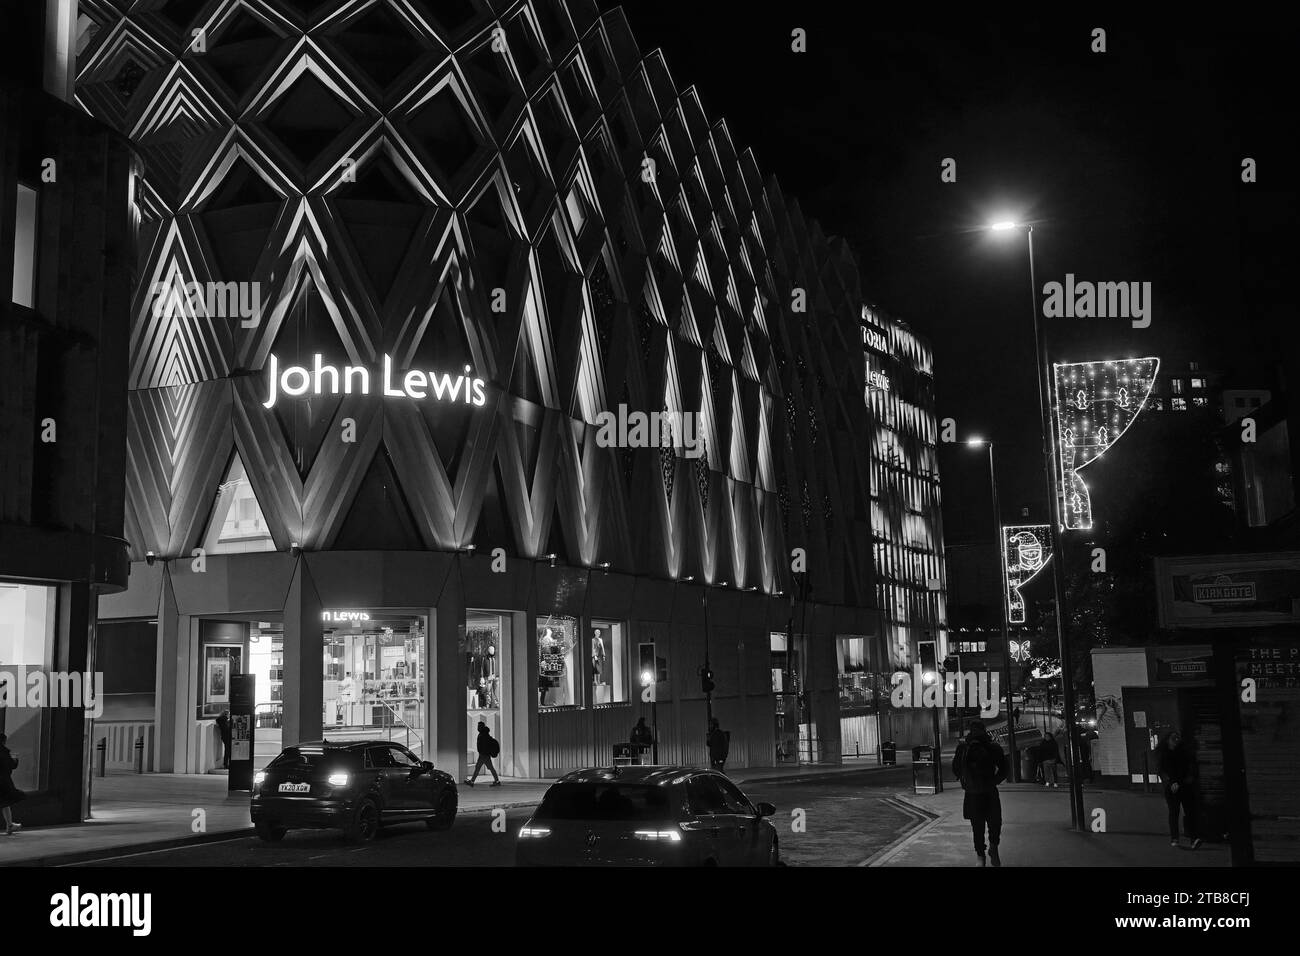 Il grande magazzino John Lewis di sera, i dettagli architettonici risaltano in bianco e nero e le luci brillanti, Leeds, Inghilterra, Regno Unito. Foto Stock